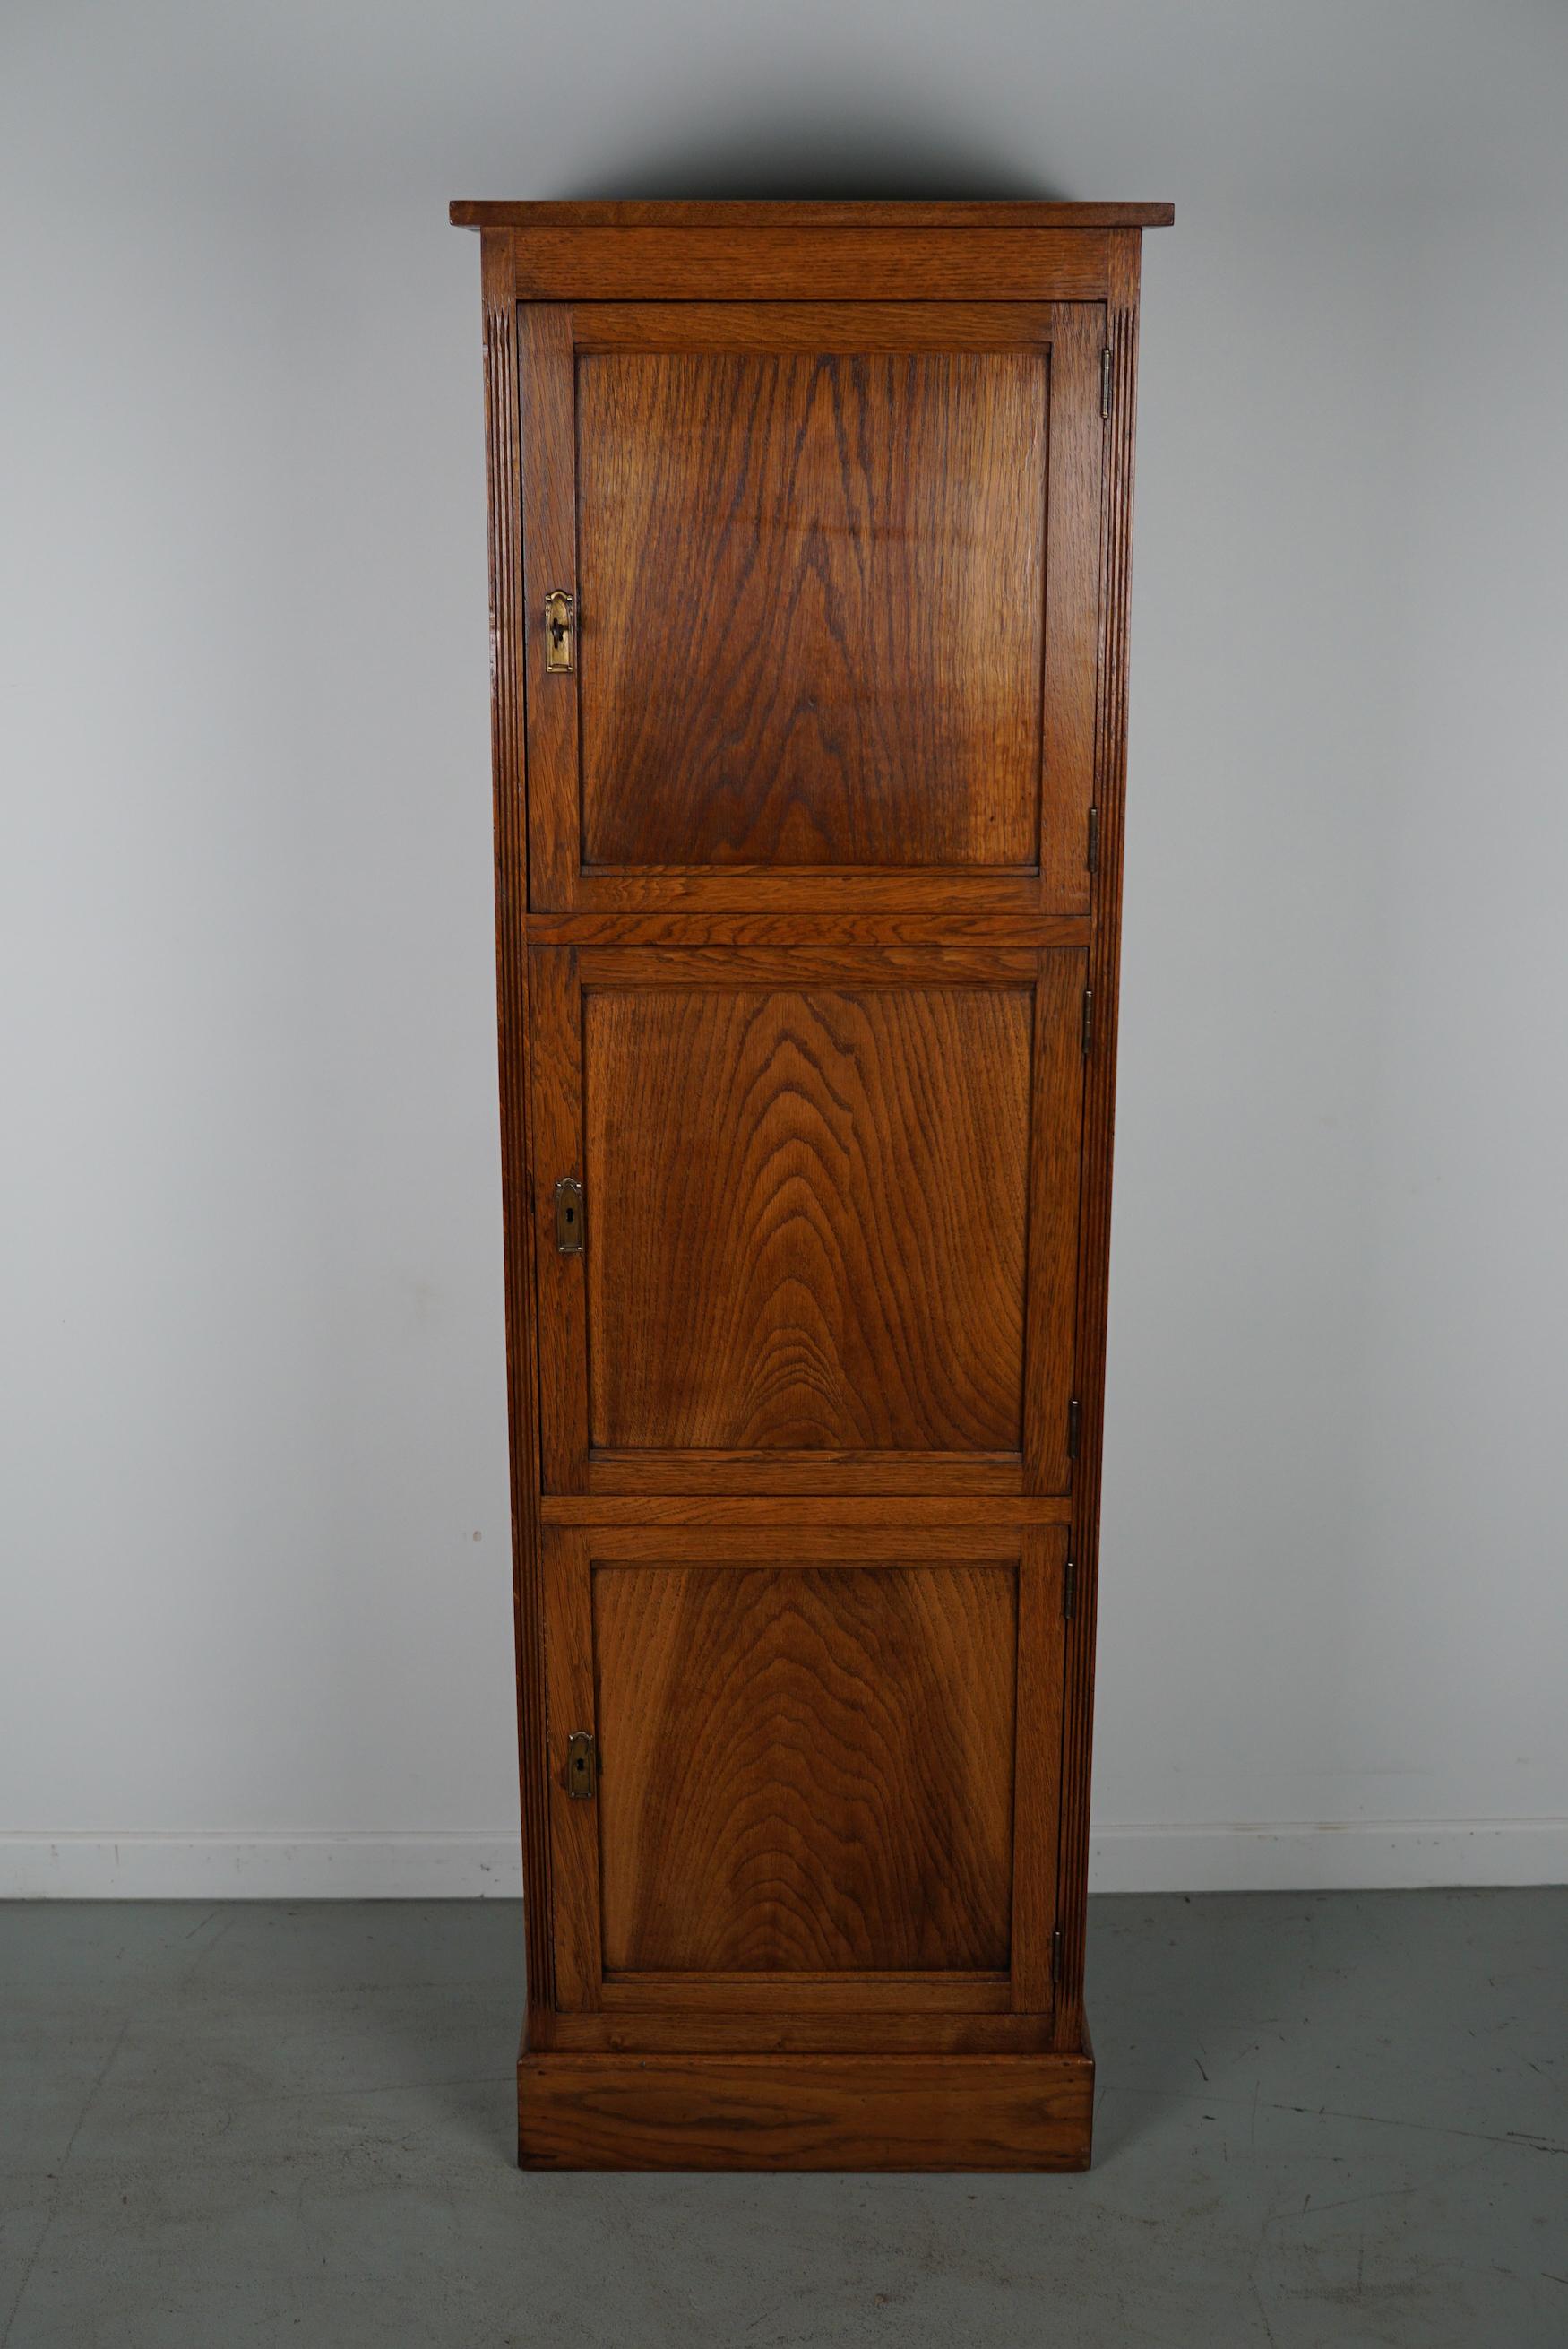 Ce casier / classeur en chêne hollandais à 3 portes a été fabriqué dans les années 1920/30 aux Pays-Bas. Les dimensions intérieures des compartiments sont les suivantes : D L H 38 x 40 x 8 cm.